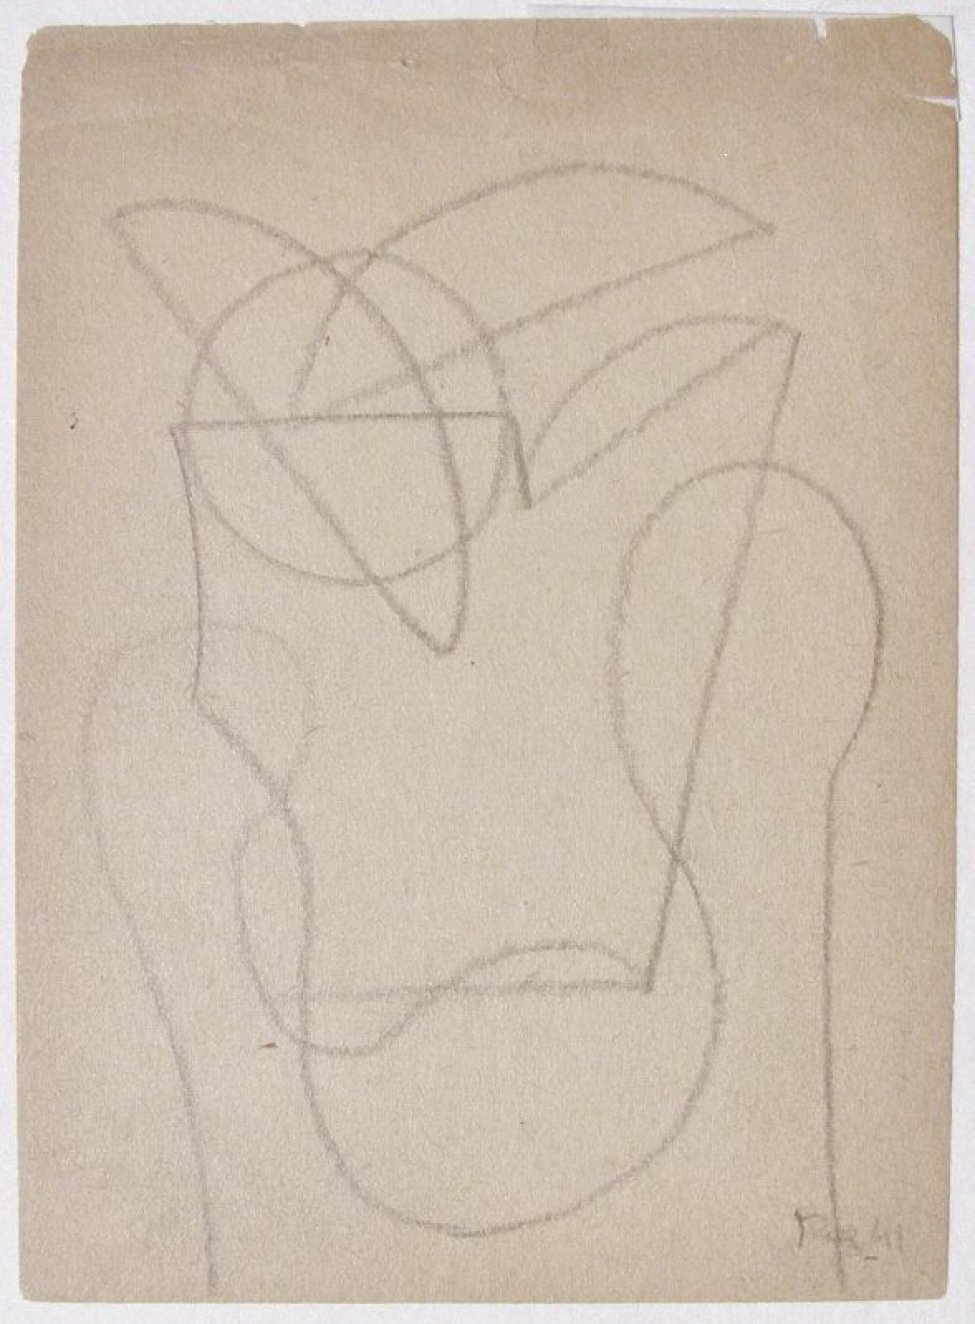 На листе из блокнота изображена абстрактная композиция из прямых, полукруглых и извилистых линий.